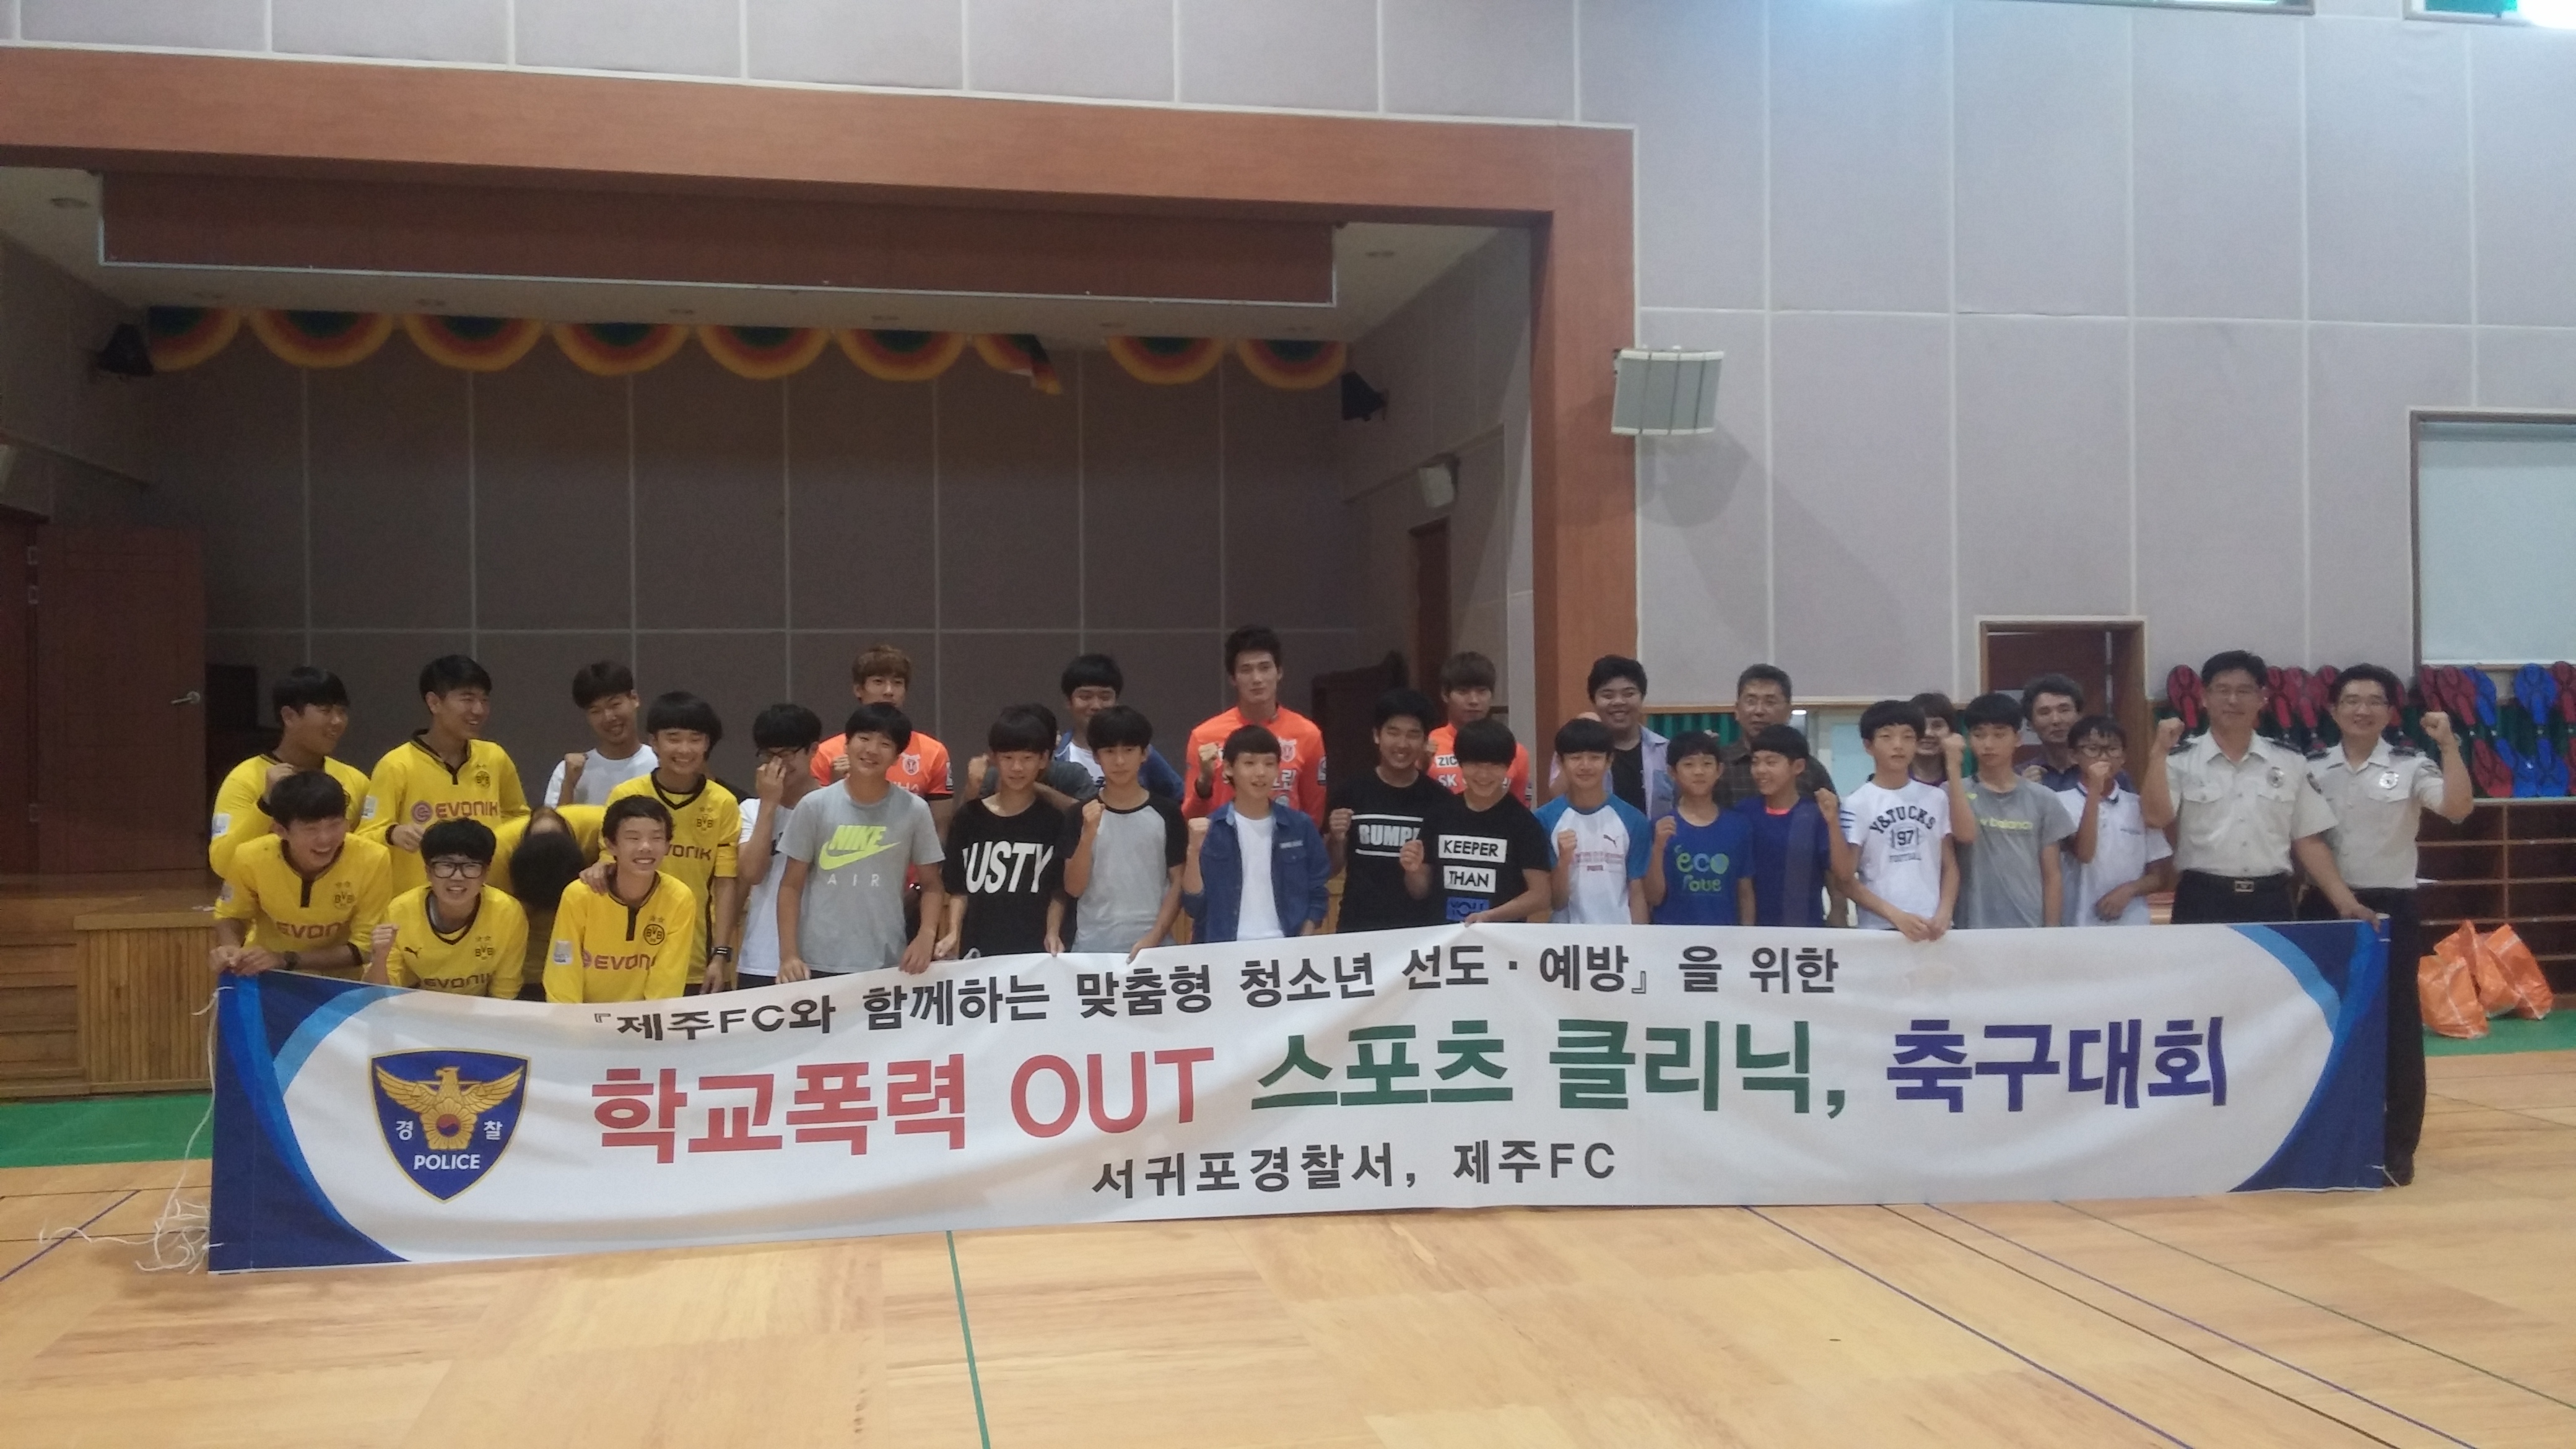 서귀포서, 학교폭력 out! 스포츠 클리닉 개최